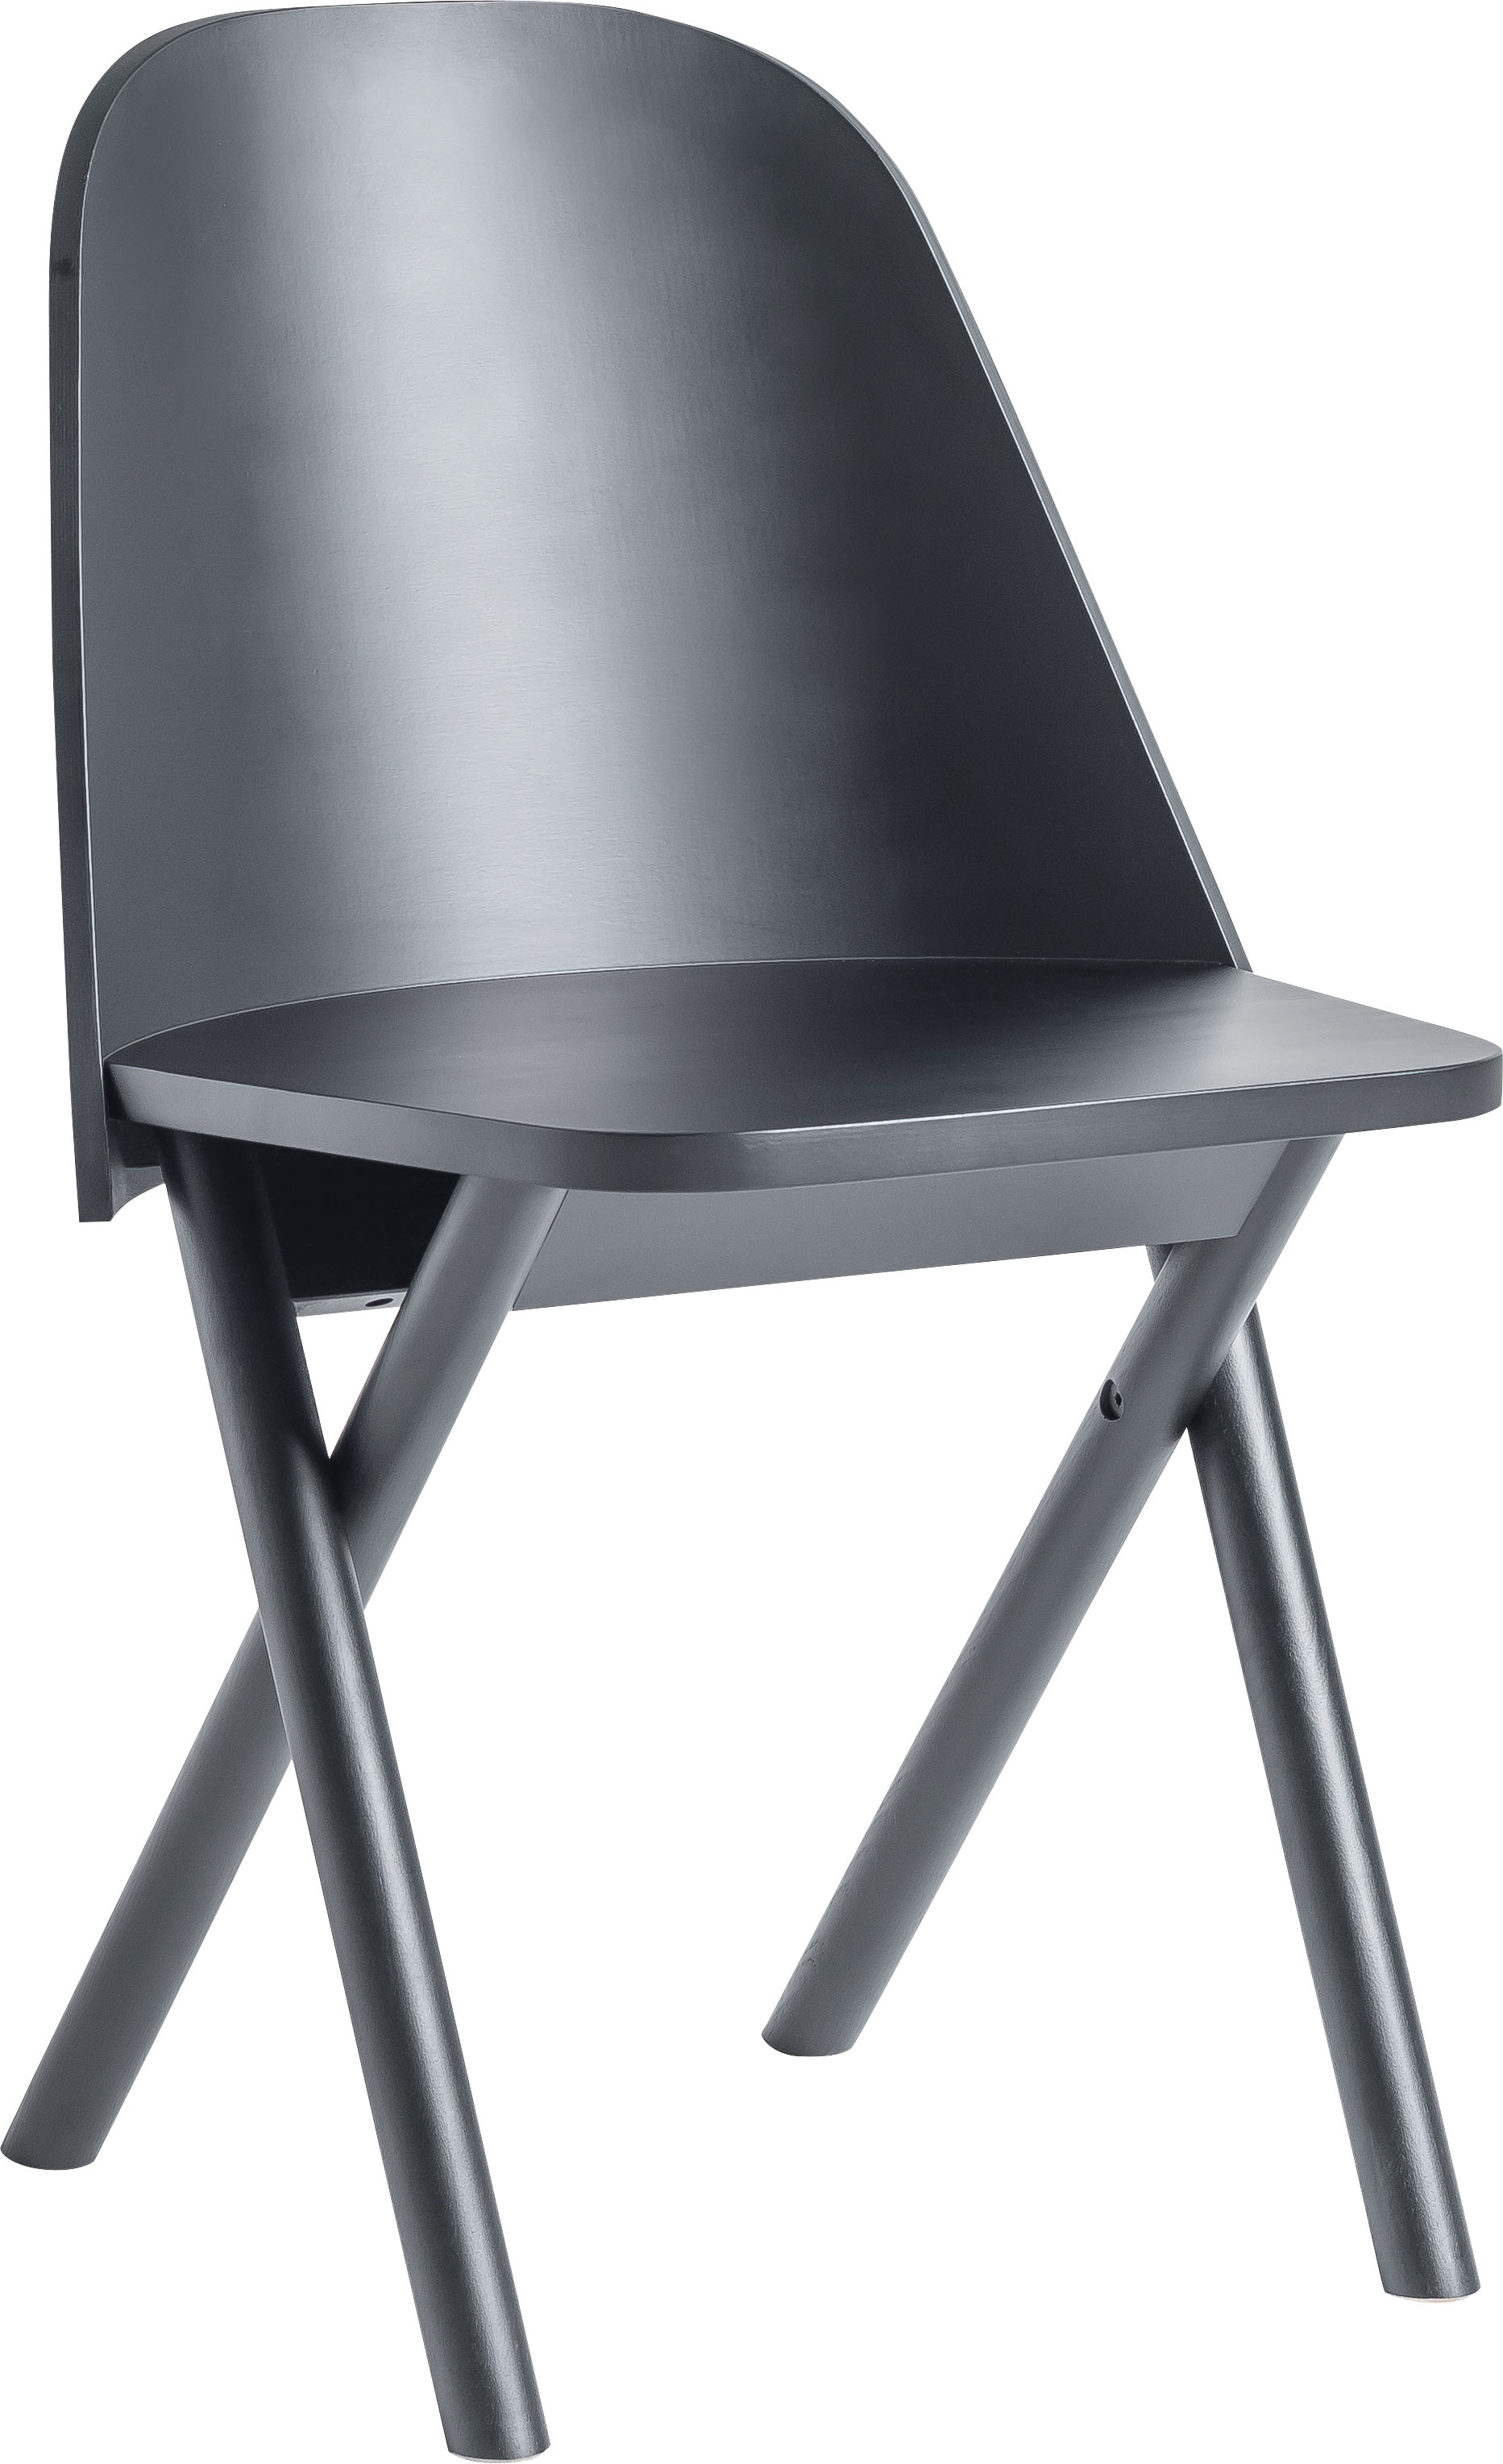 Chair Frame II